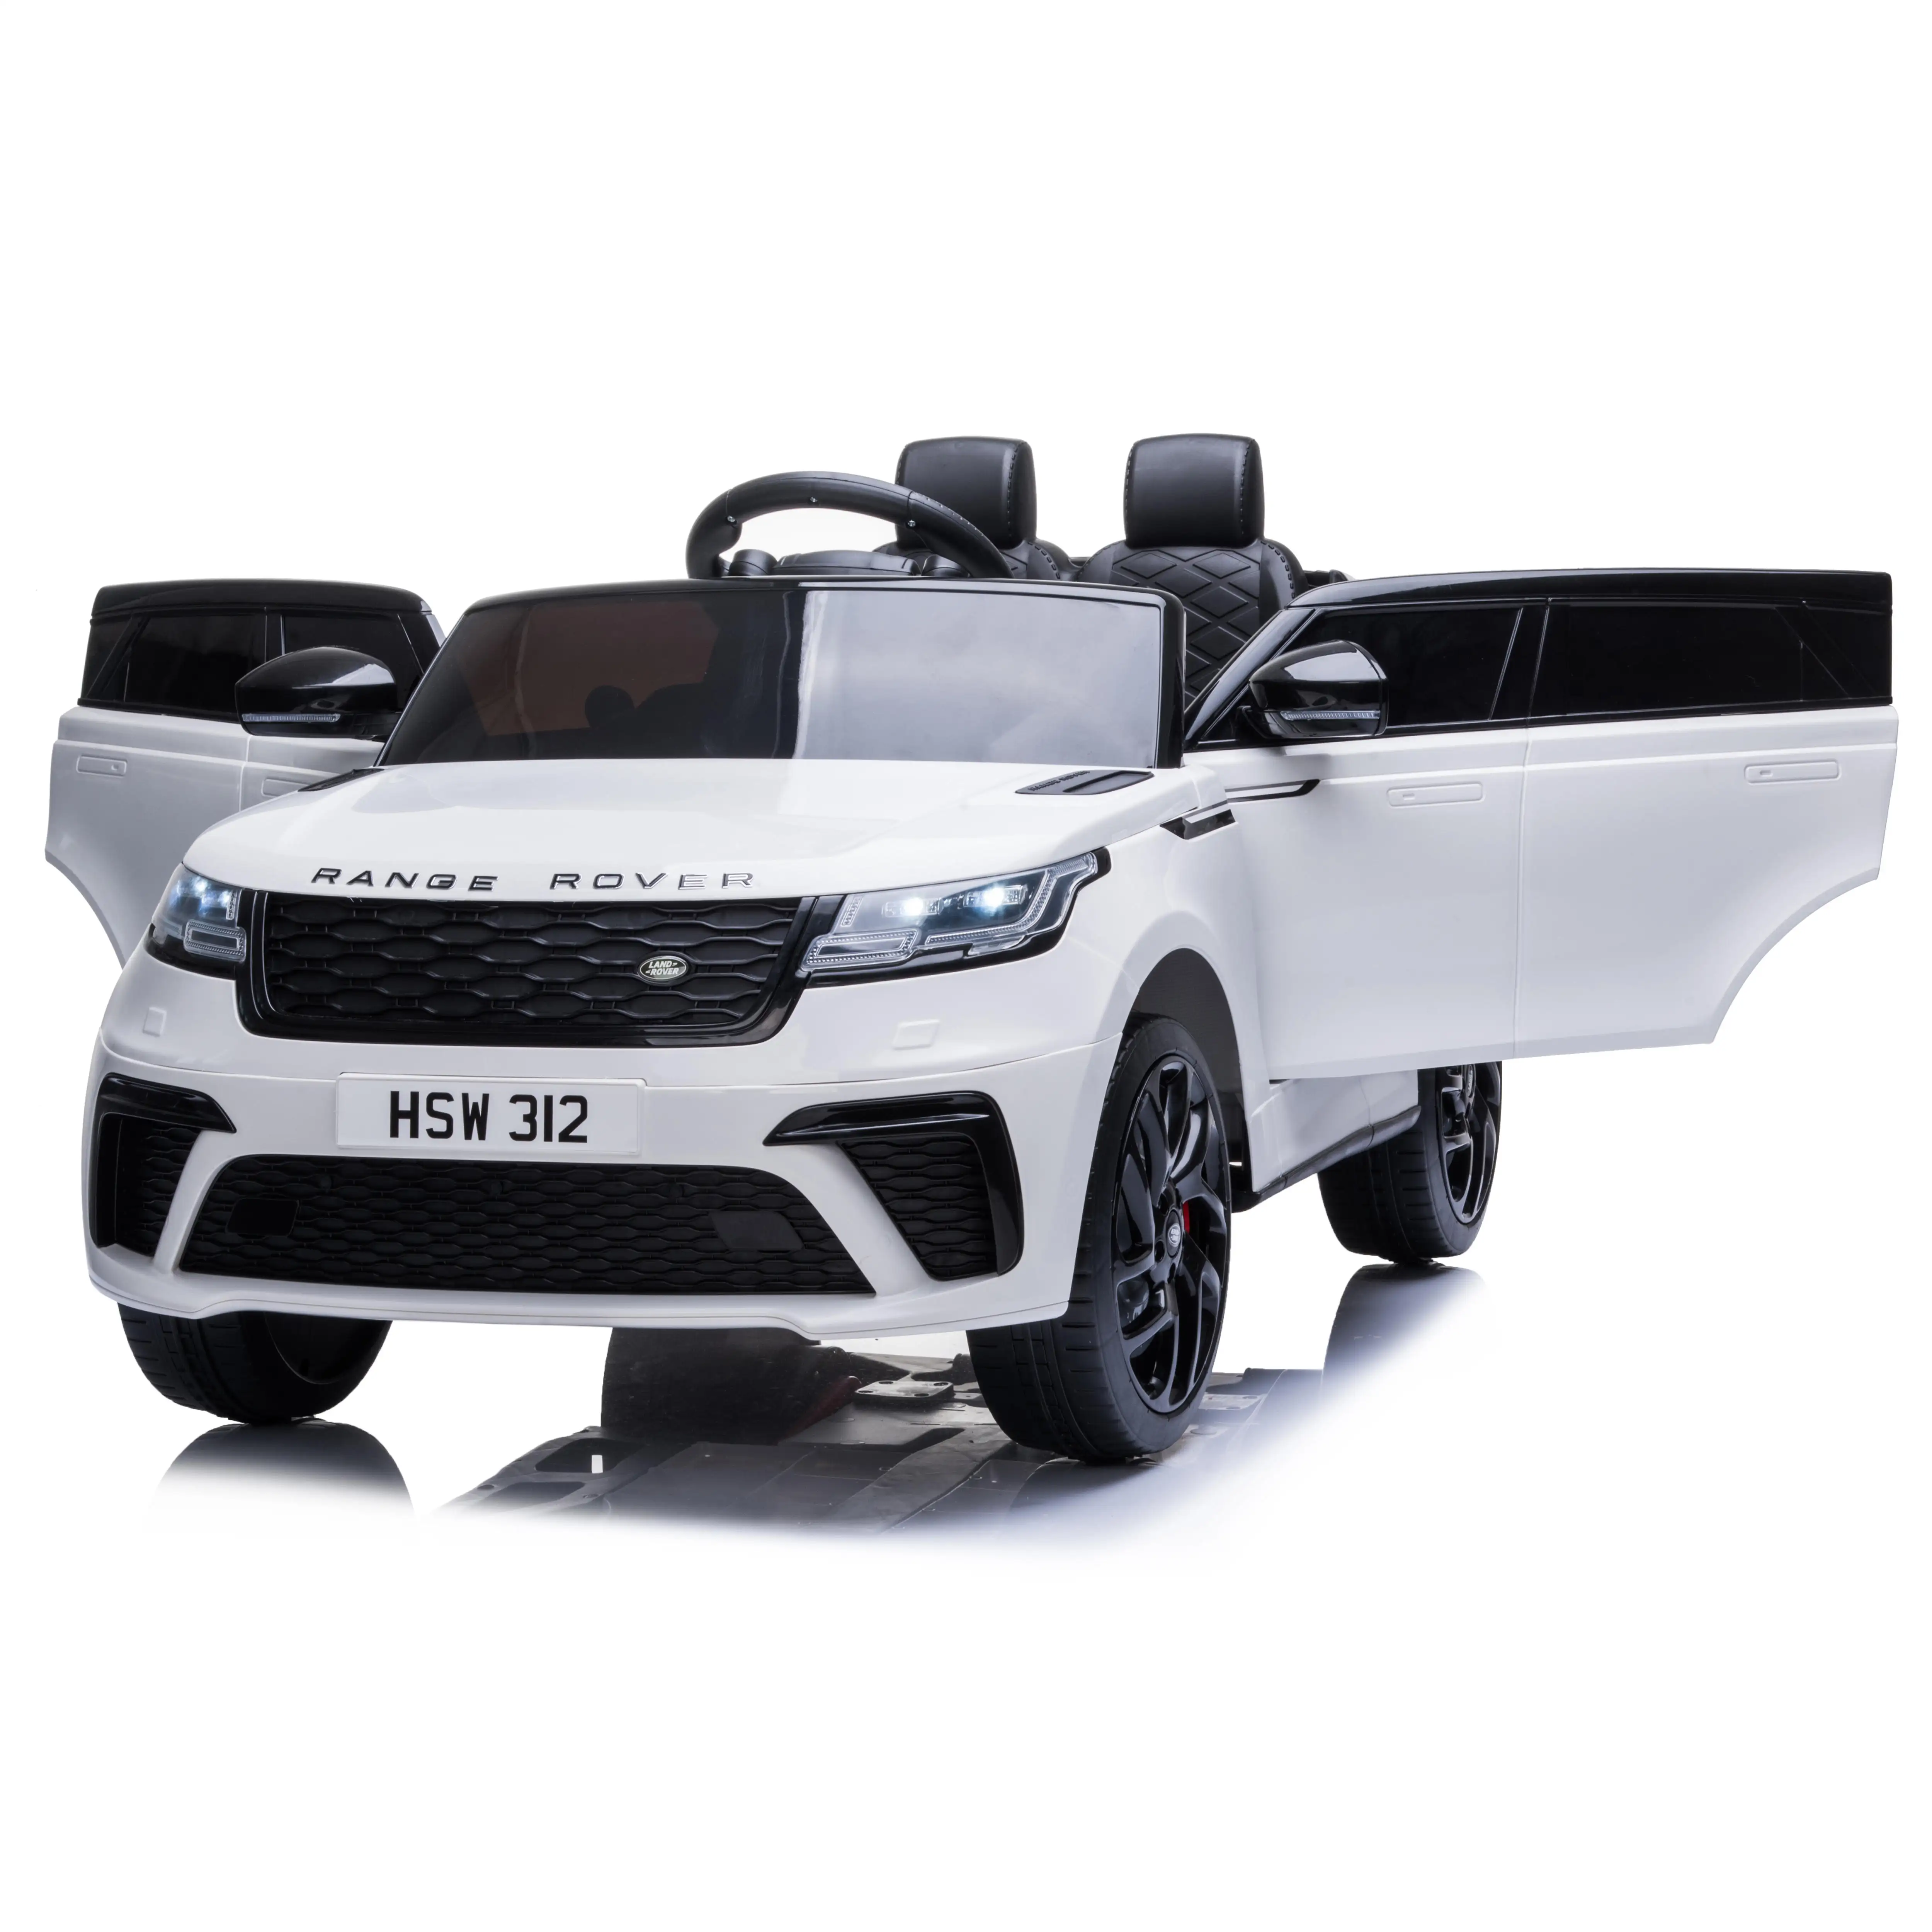 Thiết Kế Mới 2021 Được Cấp Phép Cho Trẻ Em Range Rover Velar Chạy Bằng Pin Chạy Trên Xe Ô Tô Đồ Chơi Xe Hơi Điều Khiển Từ Xa